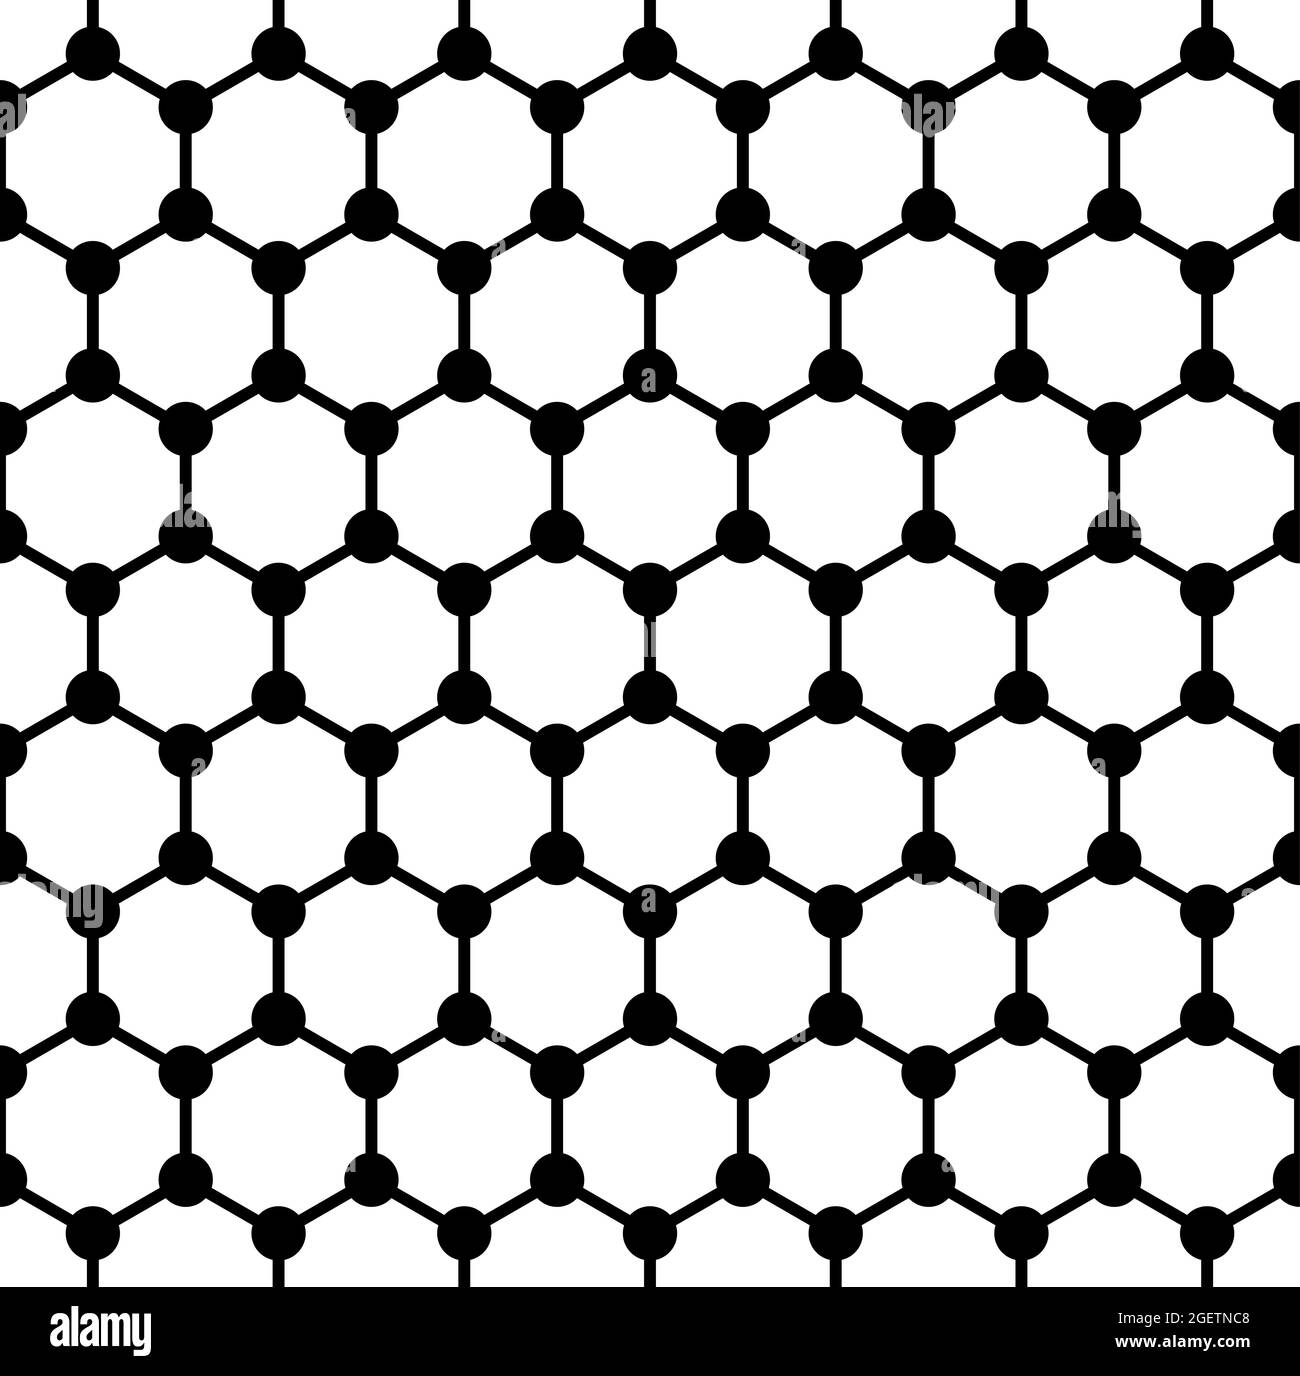 Kühne Graphenstruktur, nahtlose Kachel, schematische Molekülstruktur von Graphen, Allotrope aus Kohlenstoff, einzelne Schicht von Kohlenstoffatomen in hexagonalem Raster. Stockfoto